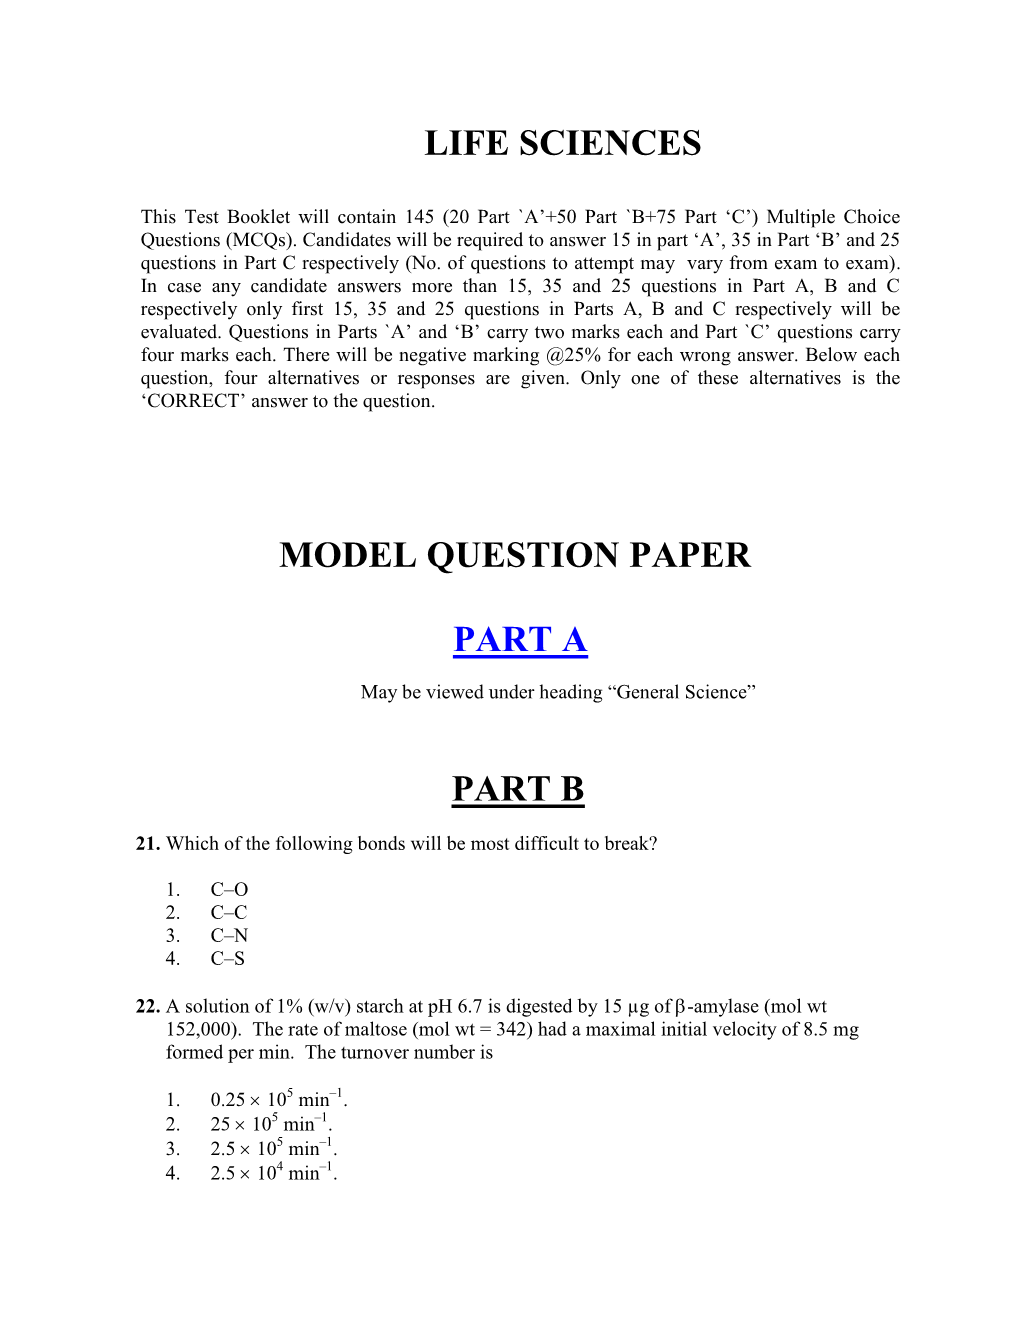 Life Sciences Model Question Paper Part a Part B